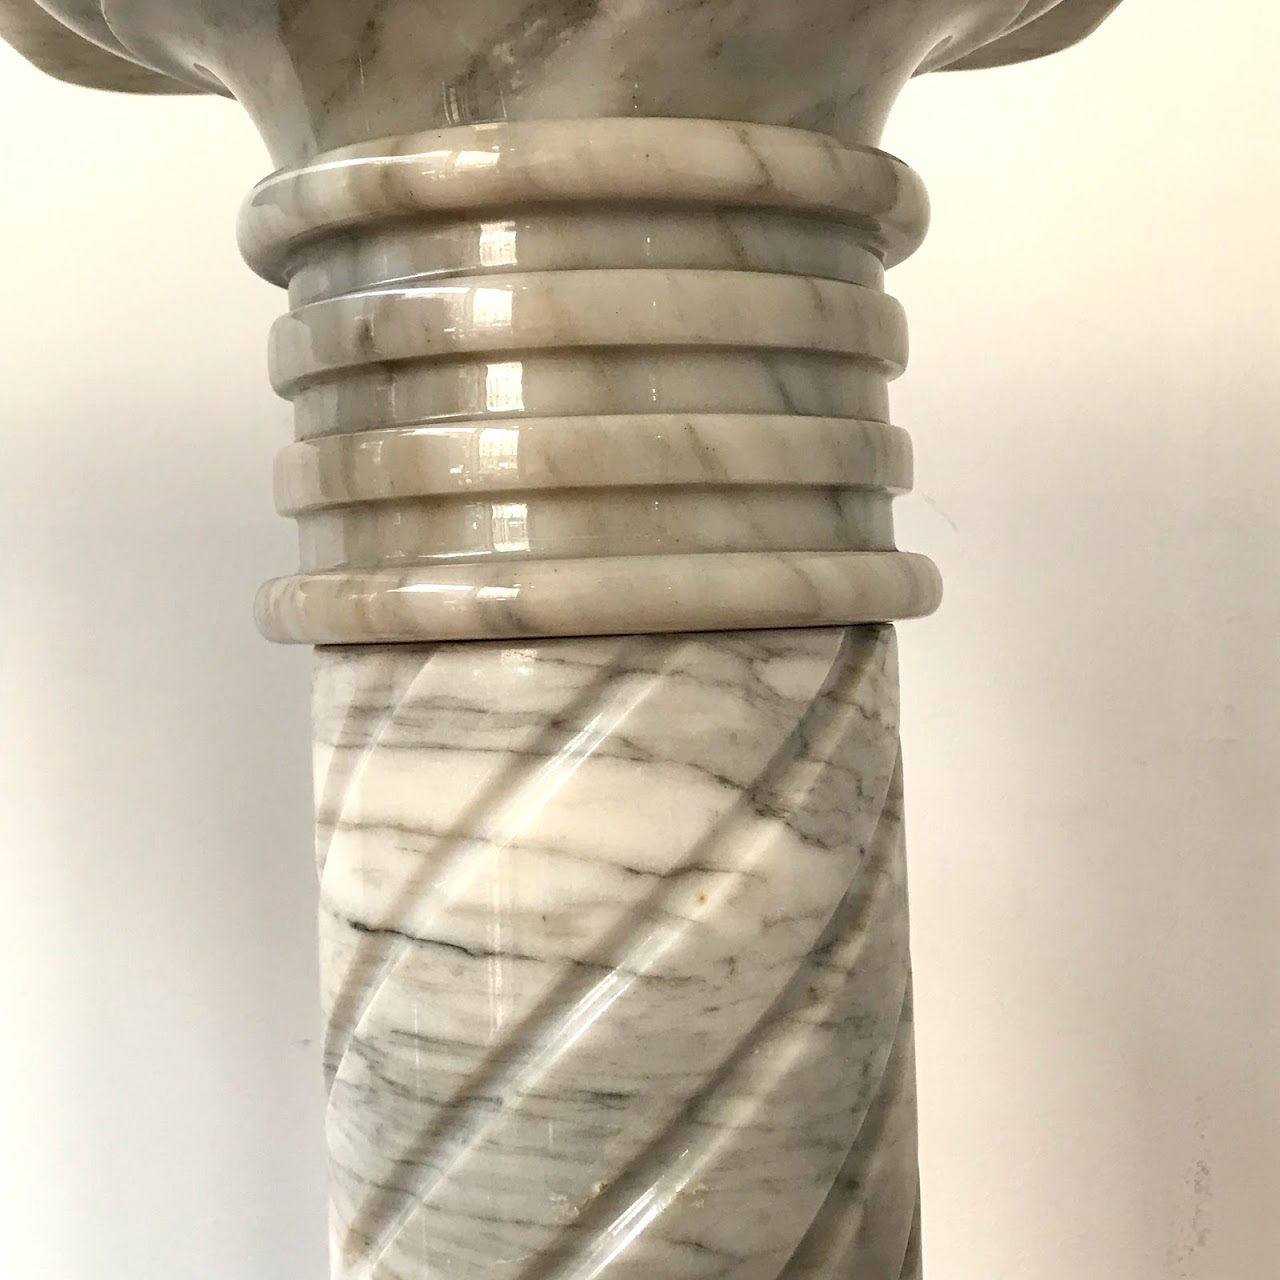 Marble Column Pedestal Pair